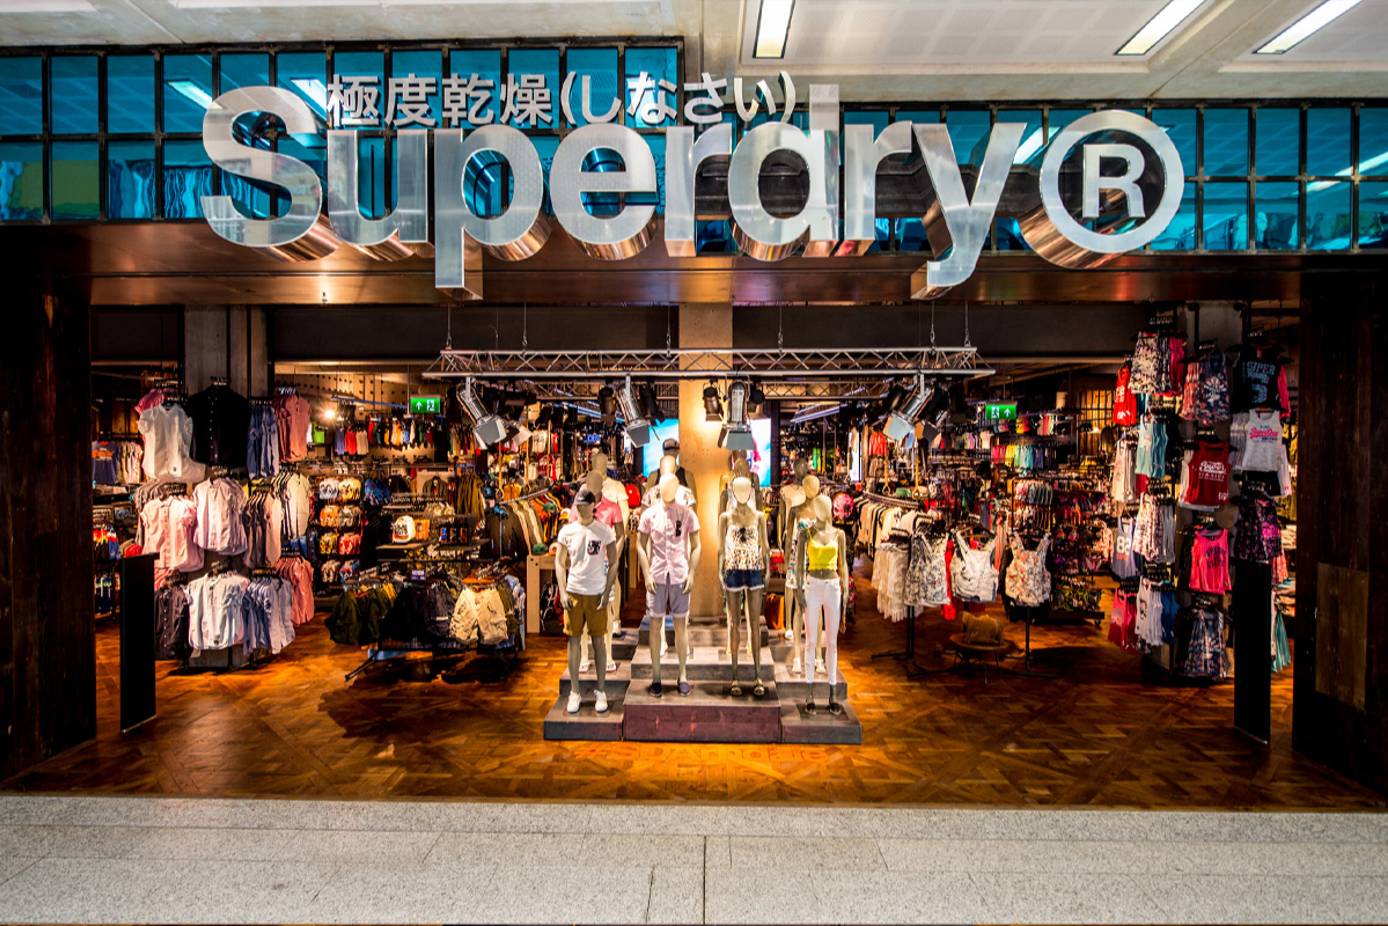 productos quimicos segunda mano Encadenar Superdry vende su negocio y la propiedad de su marca en Asia-Pacífico por  50 millones de dólares